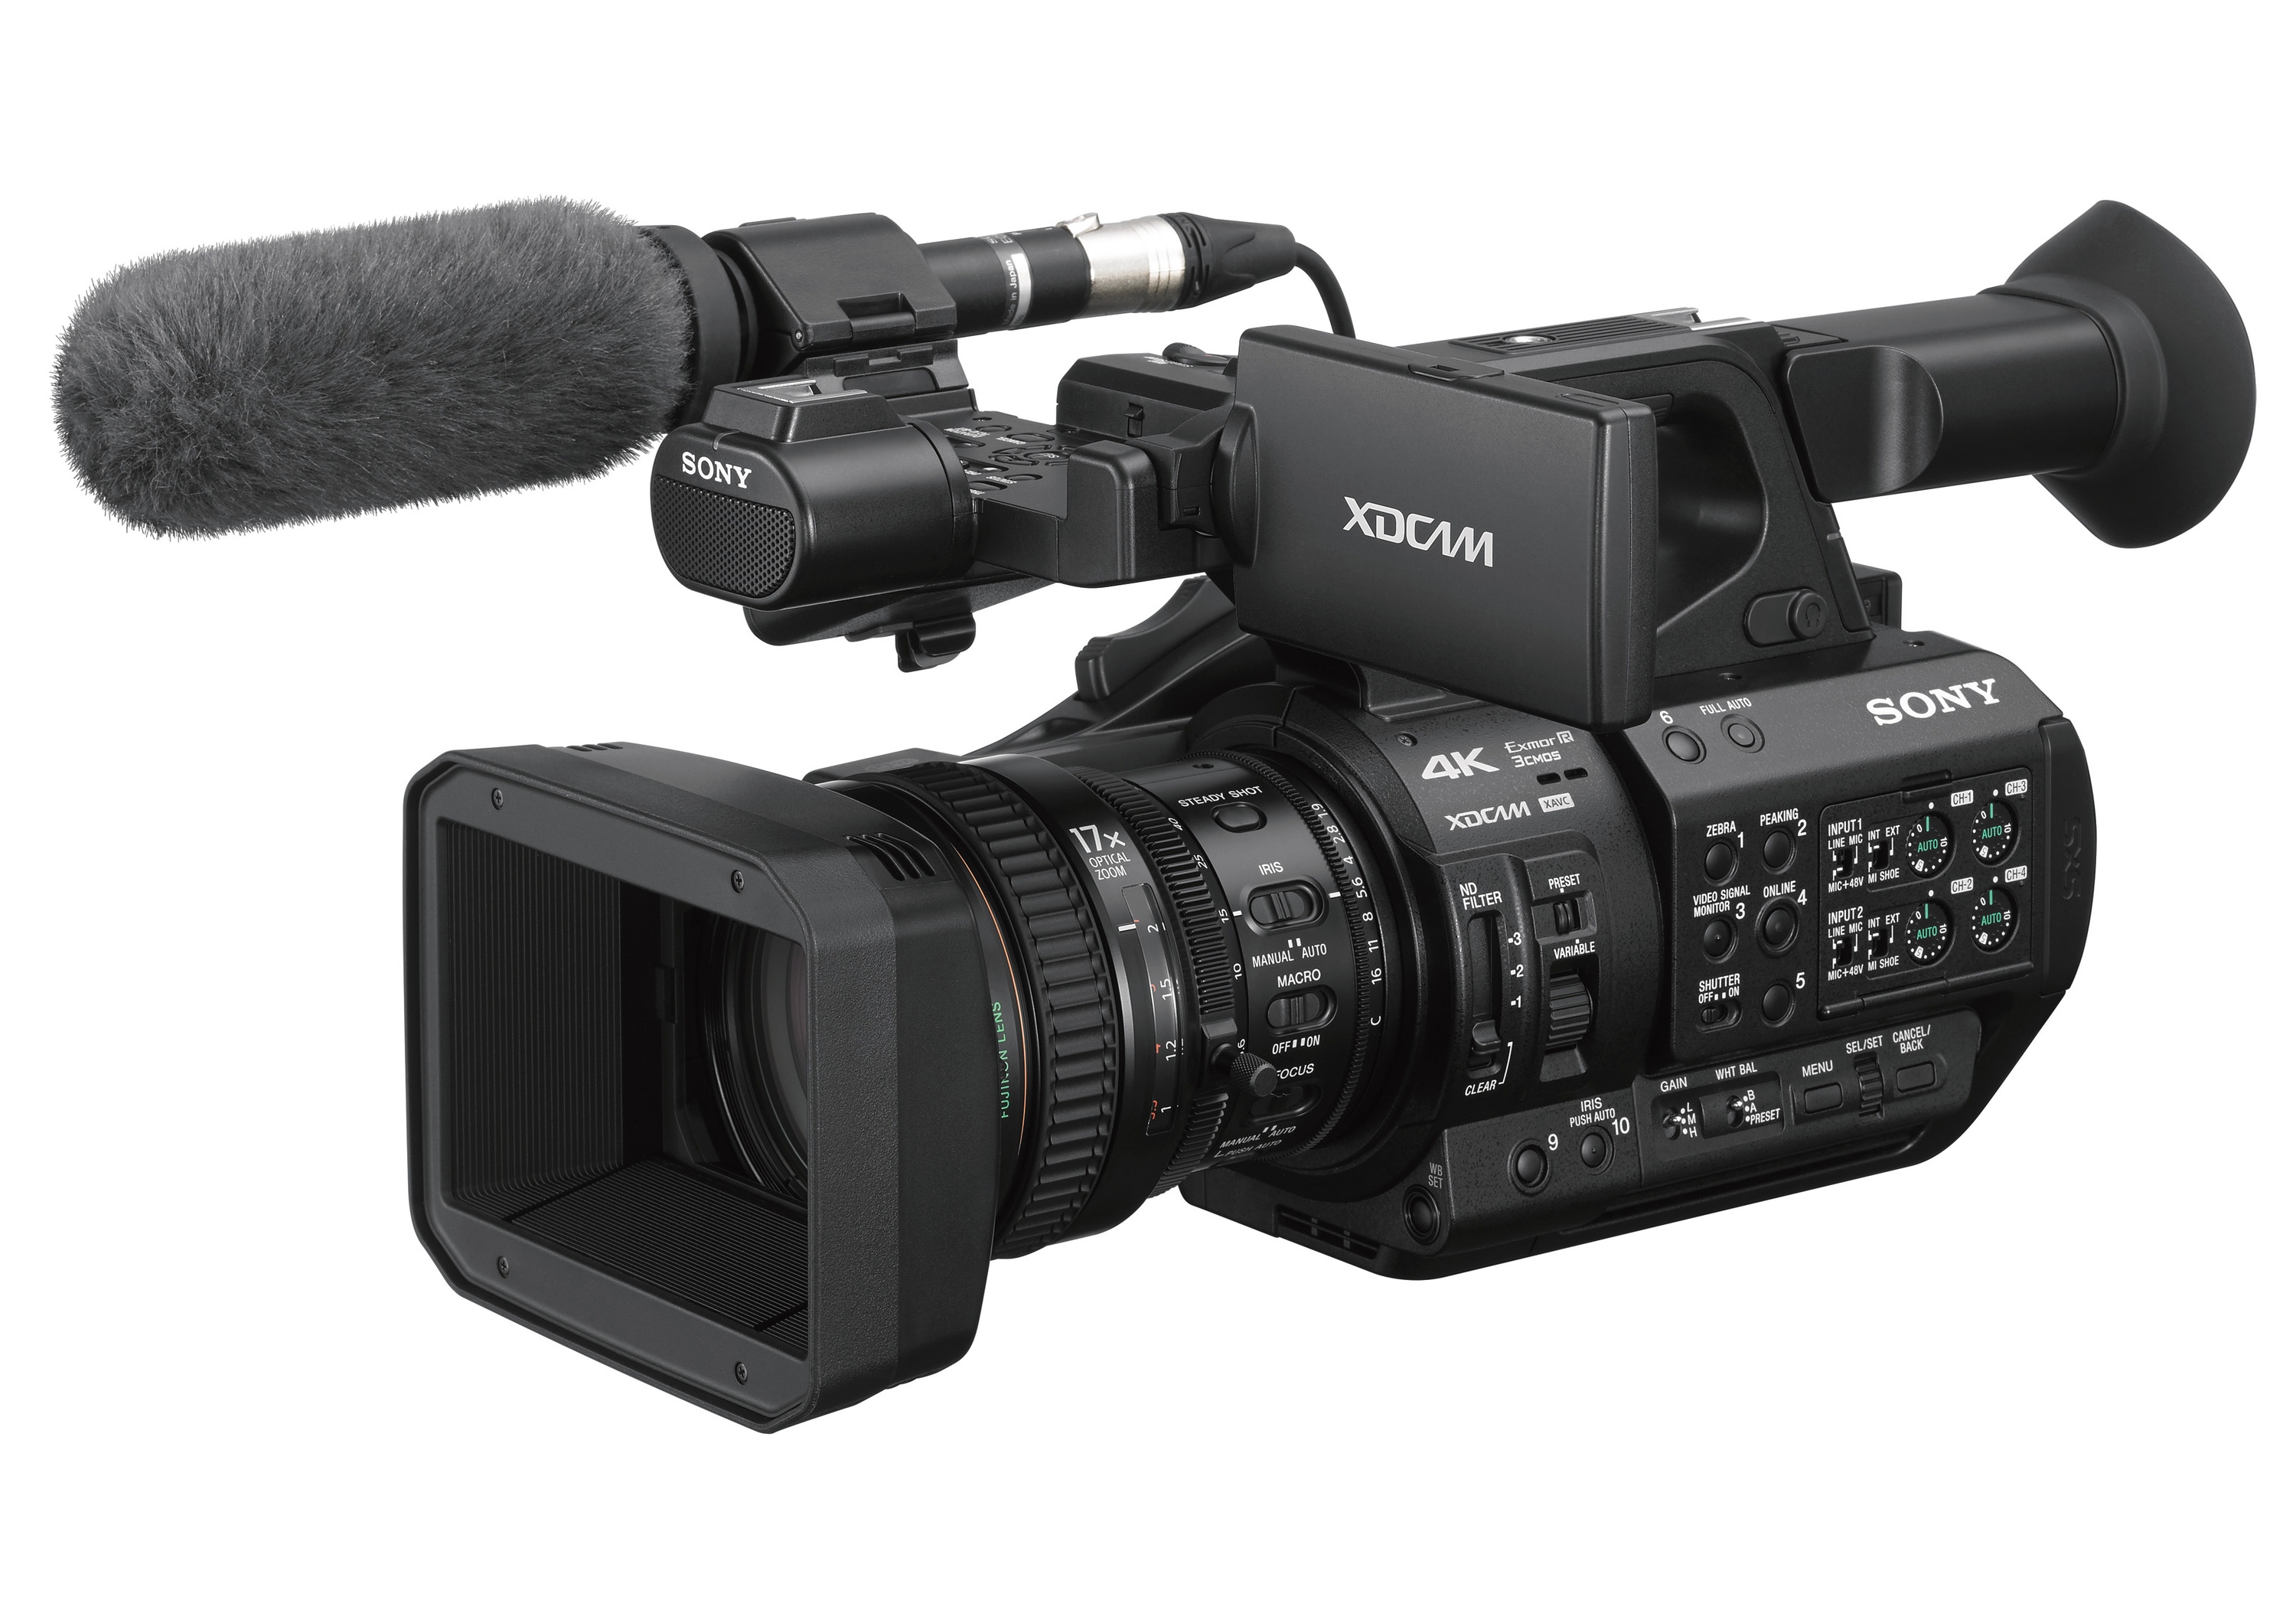 Đặc điểm nổi bật của máy quay Sony 4K